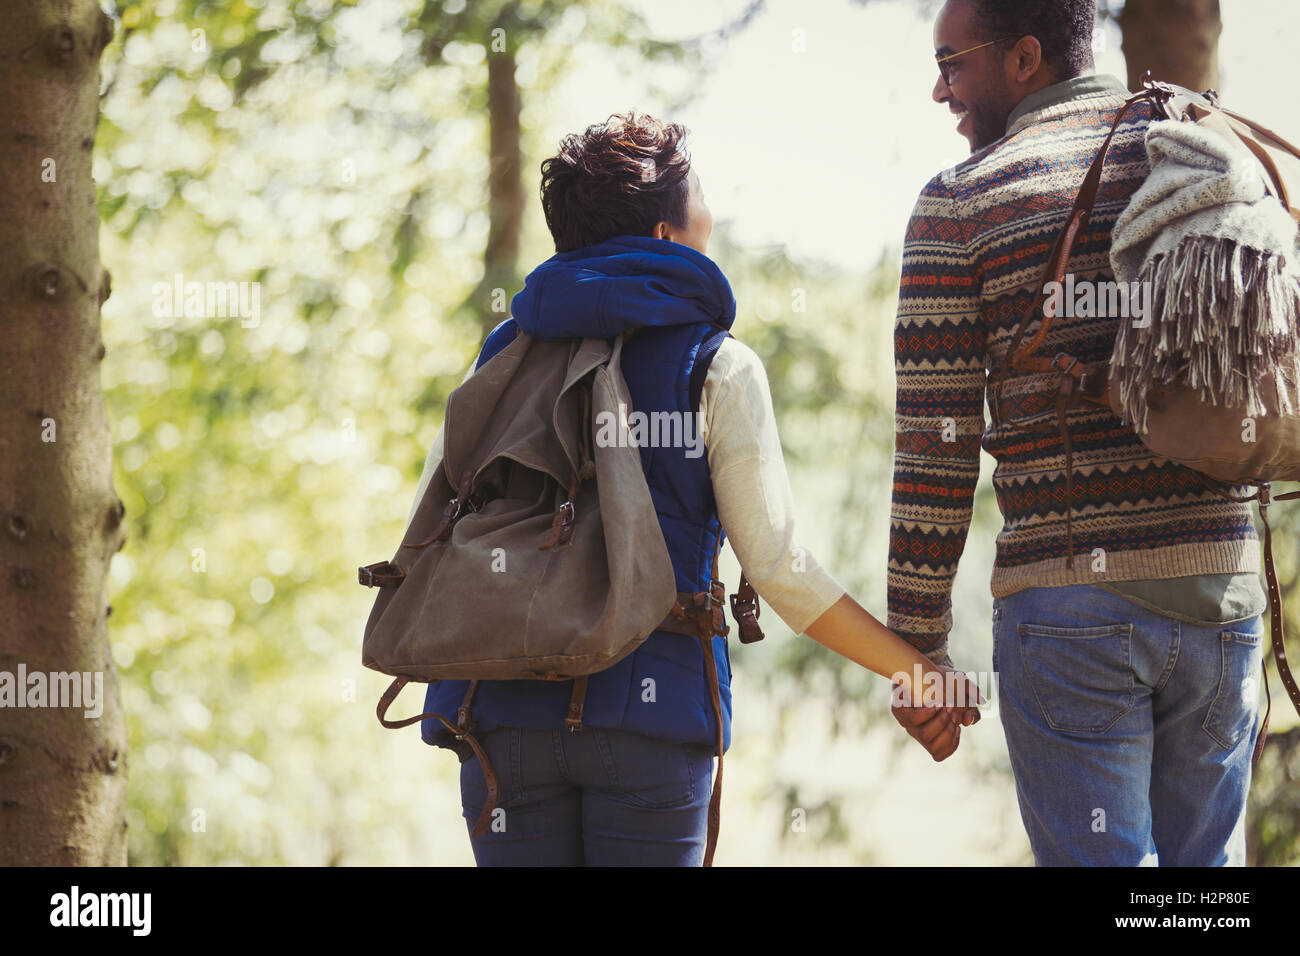 Coppia con zaini holding hands escursioni nei boschi Foto Stock